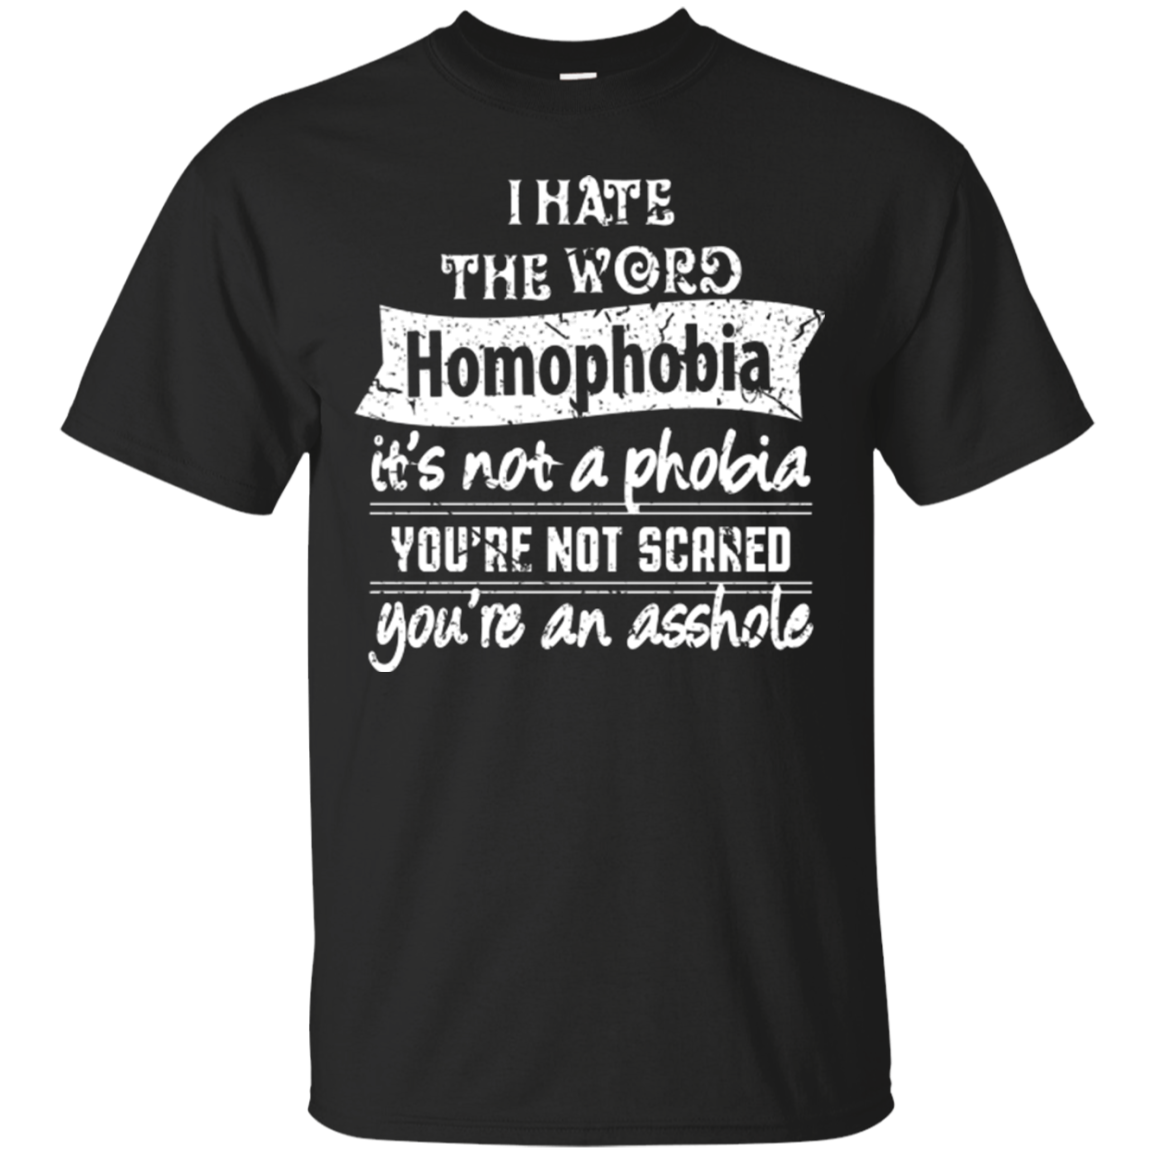 Anti Homophobia LGBT Shirt Gay pride ultra cotton tshirt for men